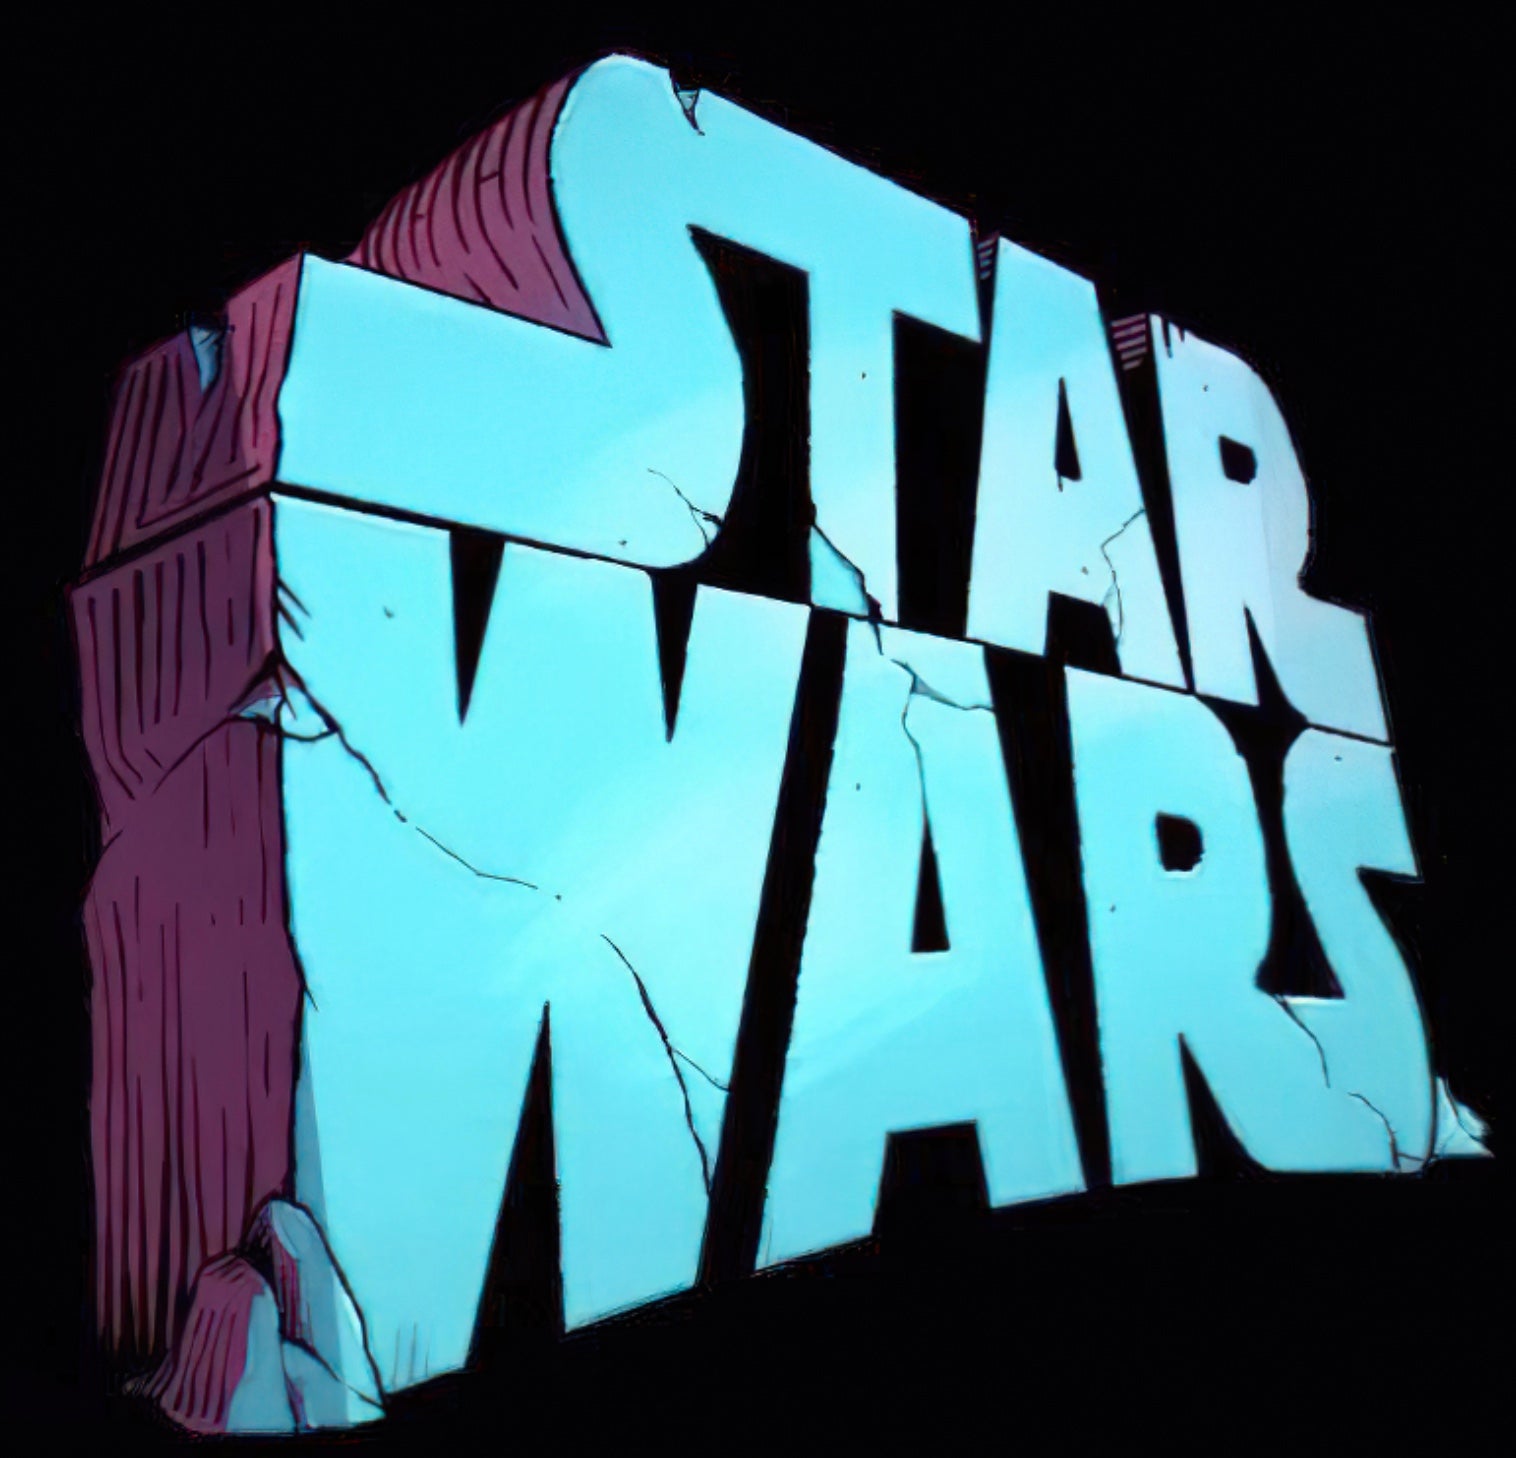 Image: Lucasfilm